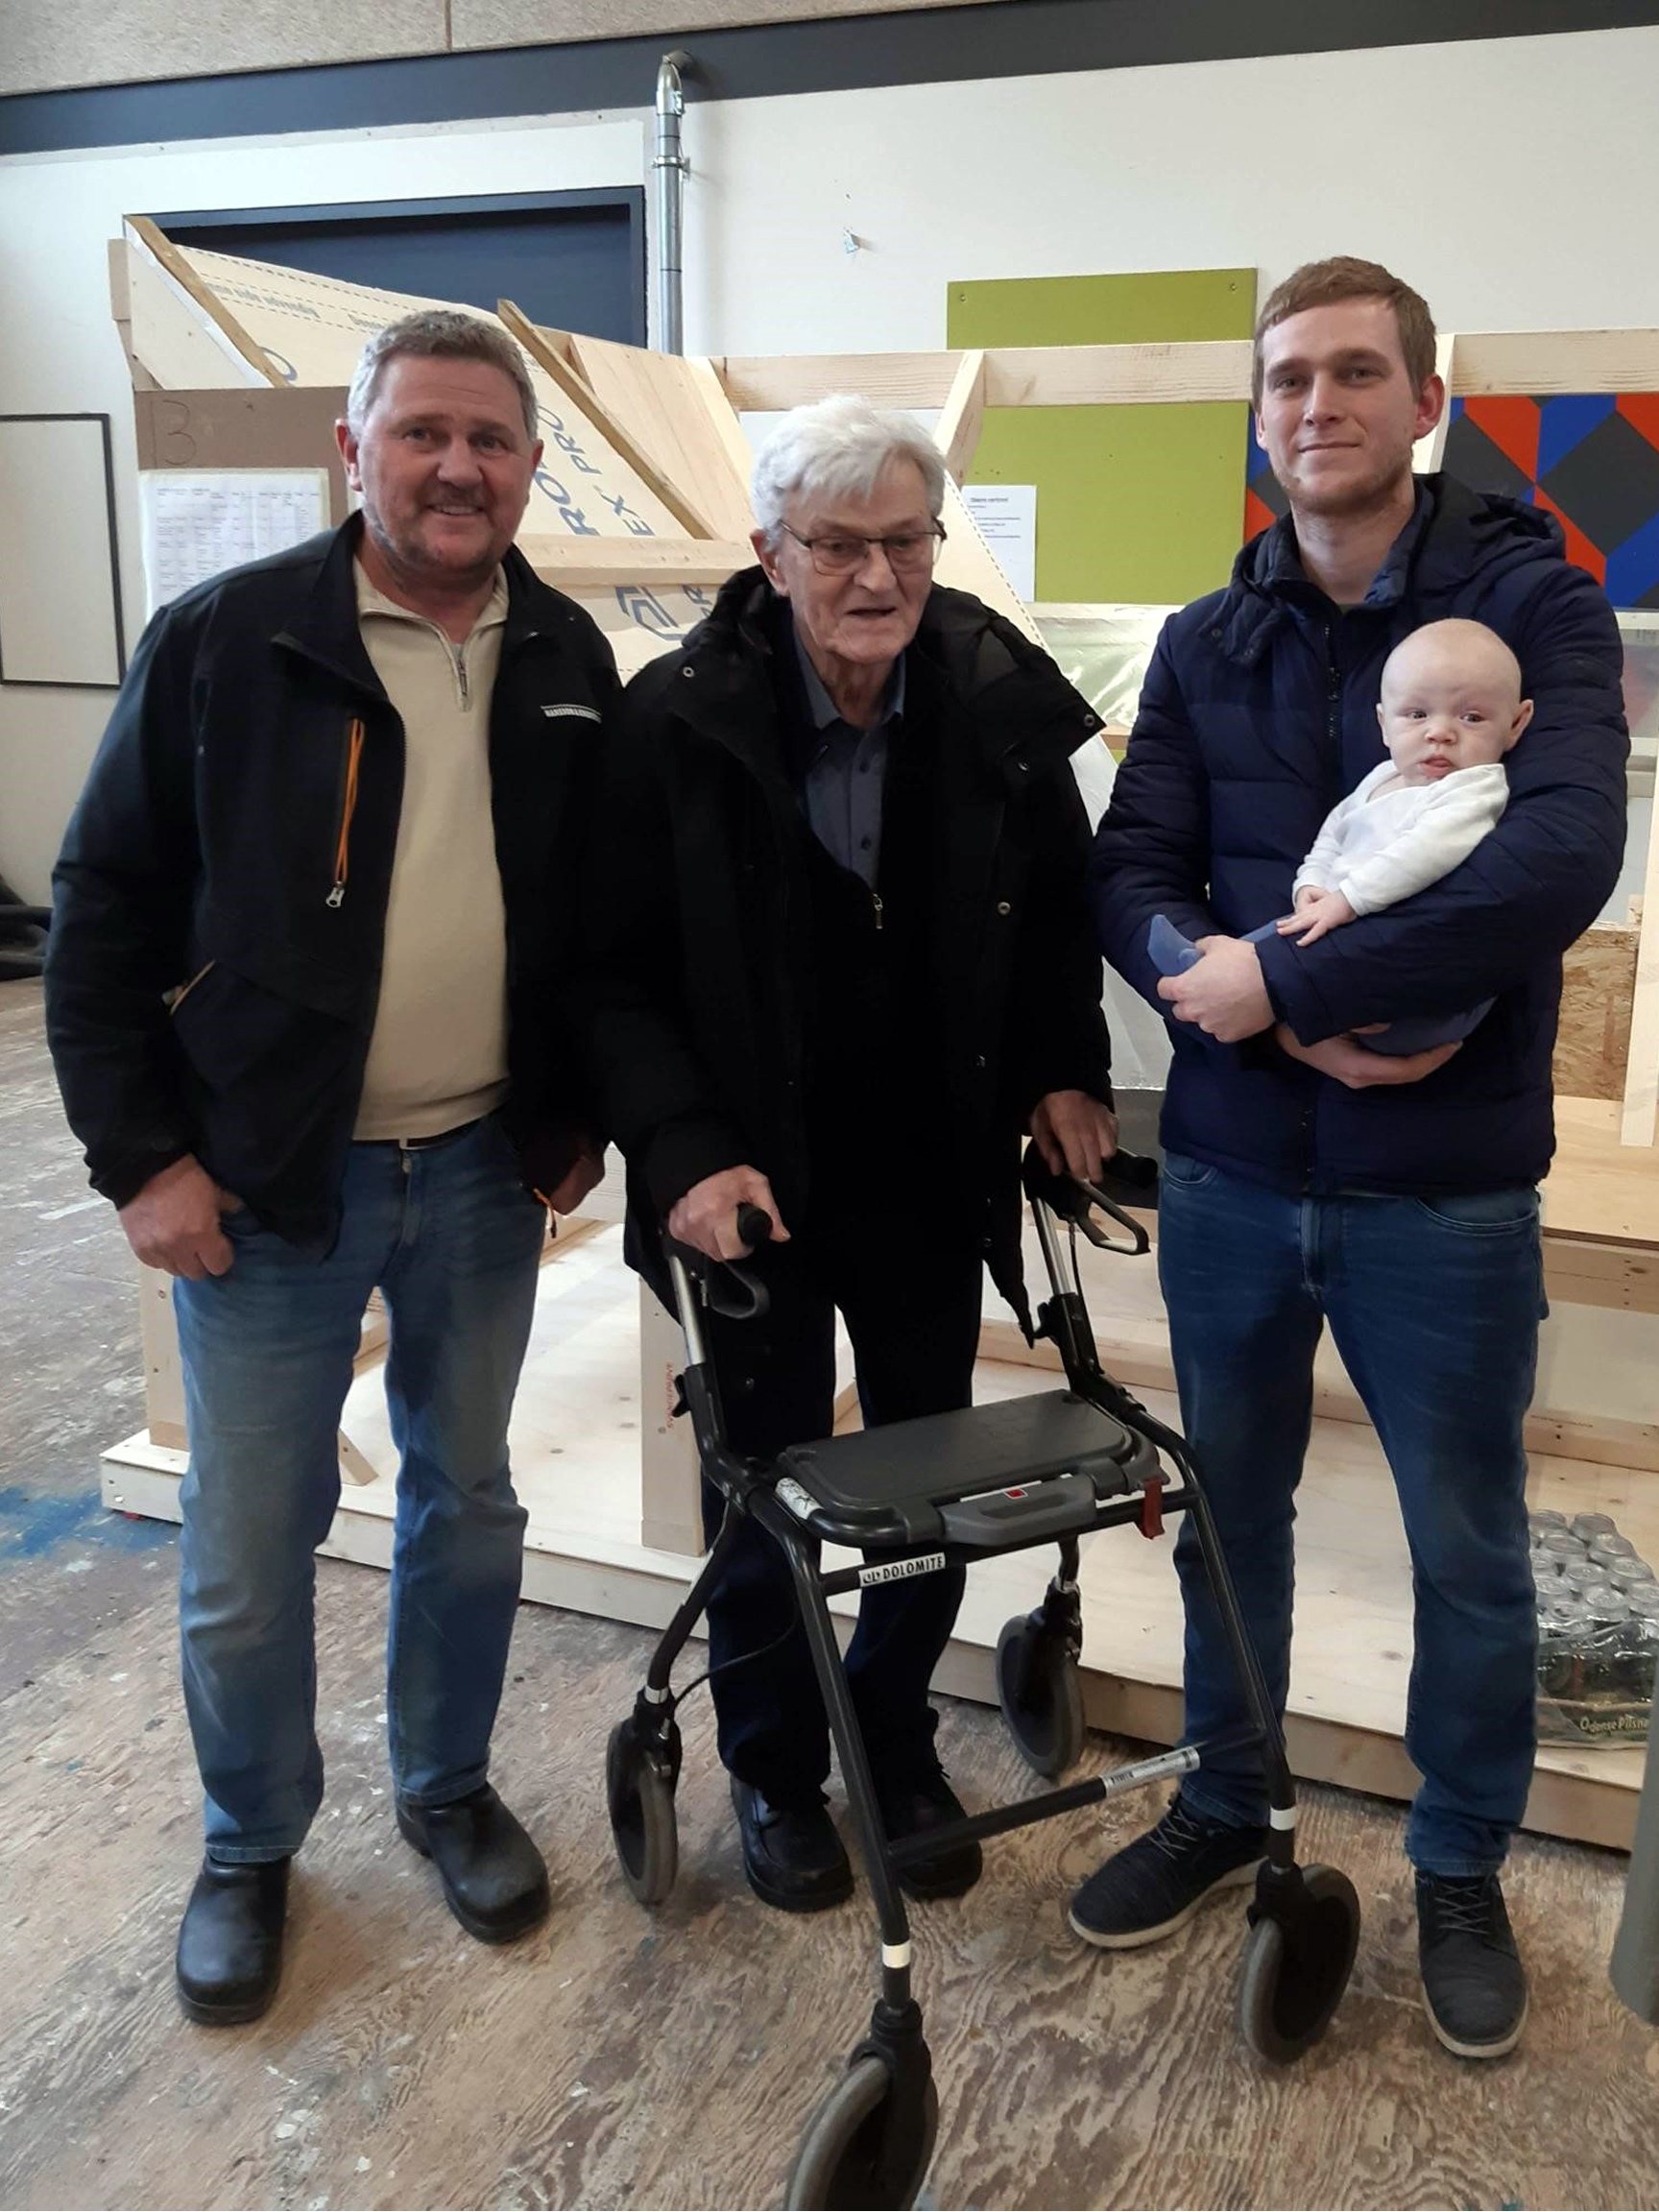 Fire generationer til svendeprøven: Far Jens Mørck Rasmussen, farfar Villy Rasmussen og Simon Mørck Rasmussen med sønnen Luca